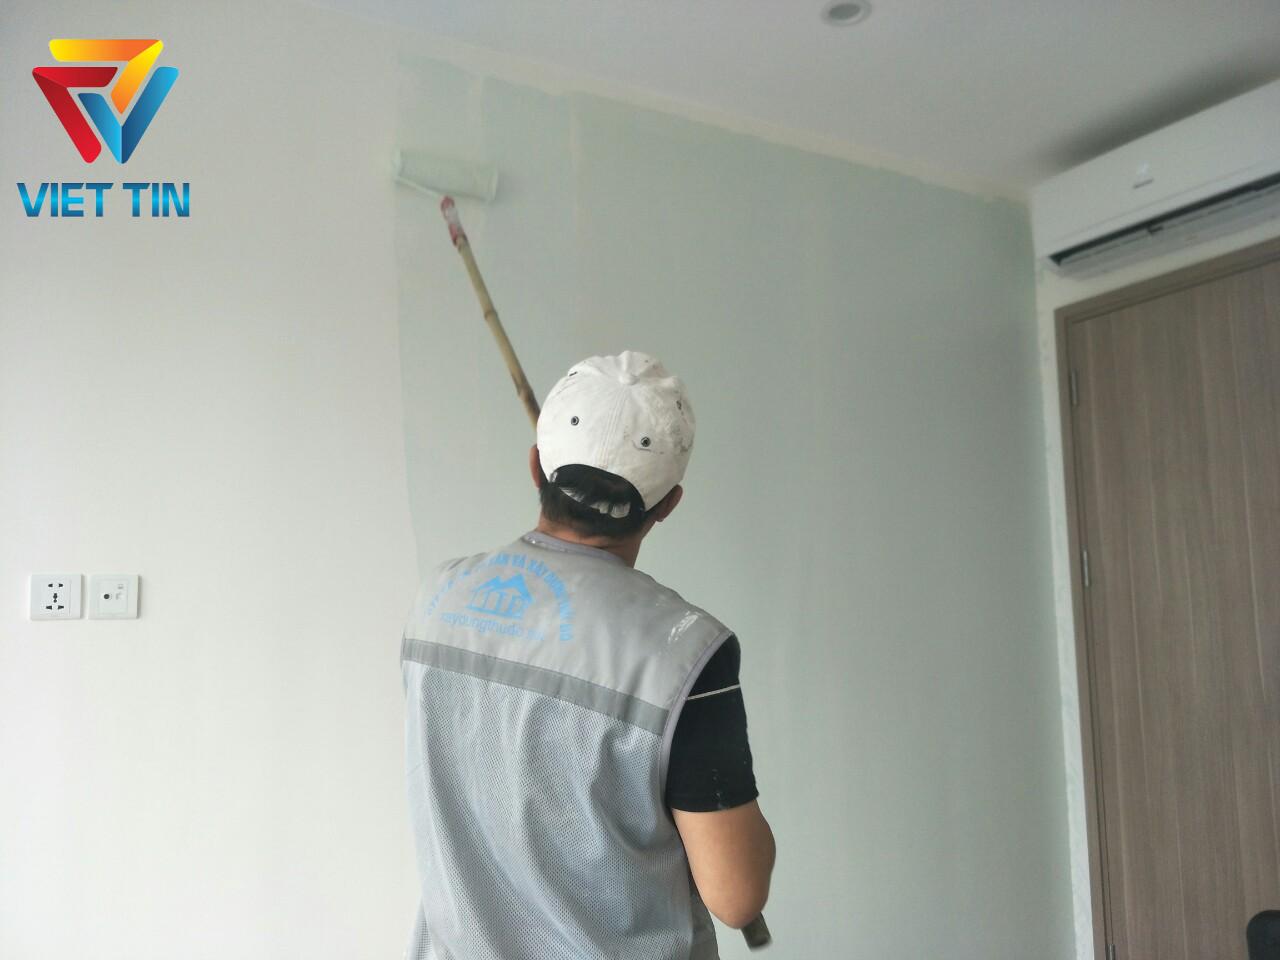 Nhu cầu sử dụng dịch vụ sơn nhà tại Đống Đa hiện nay